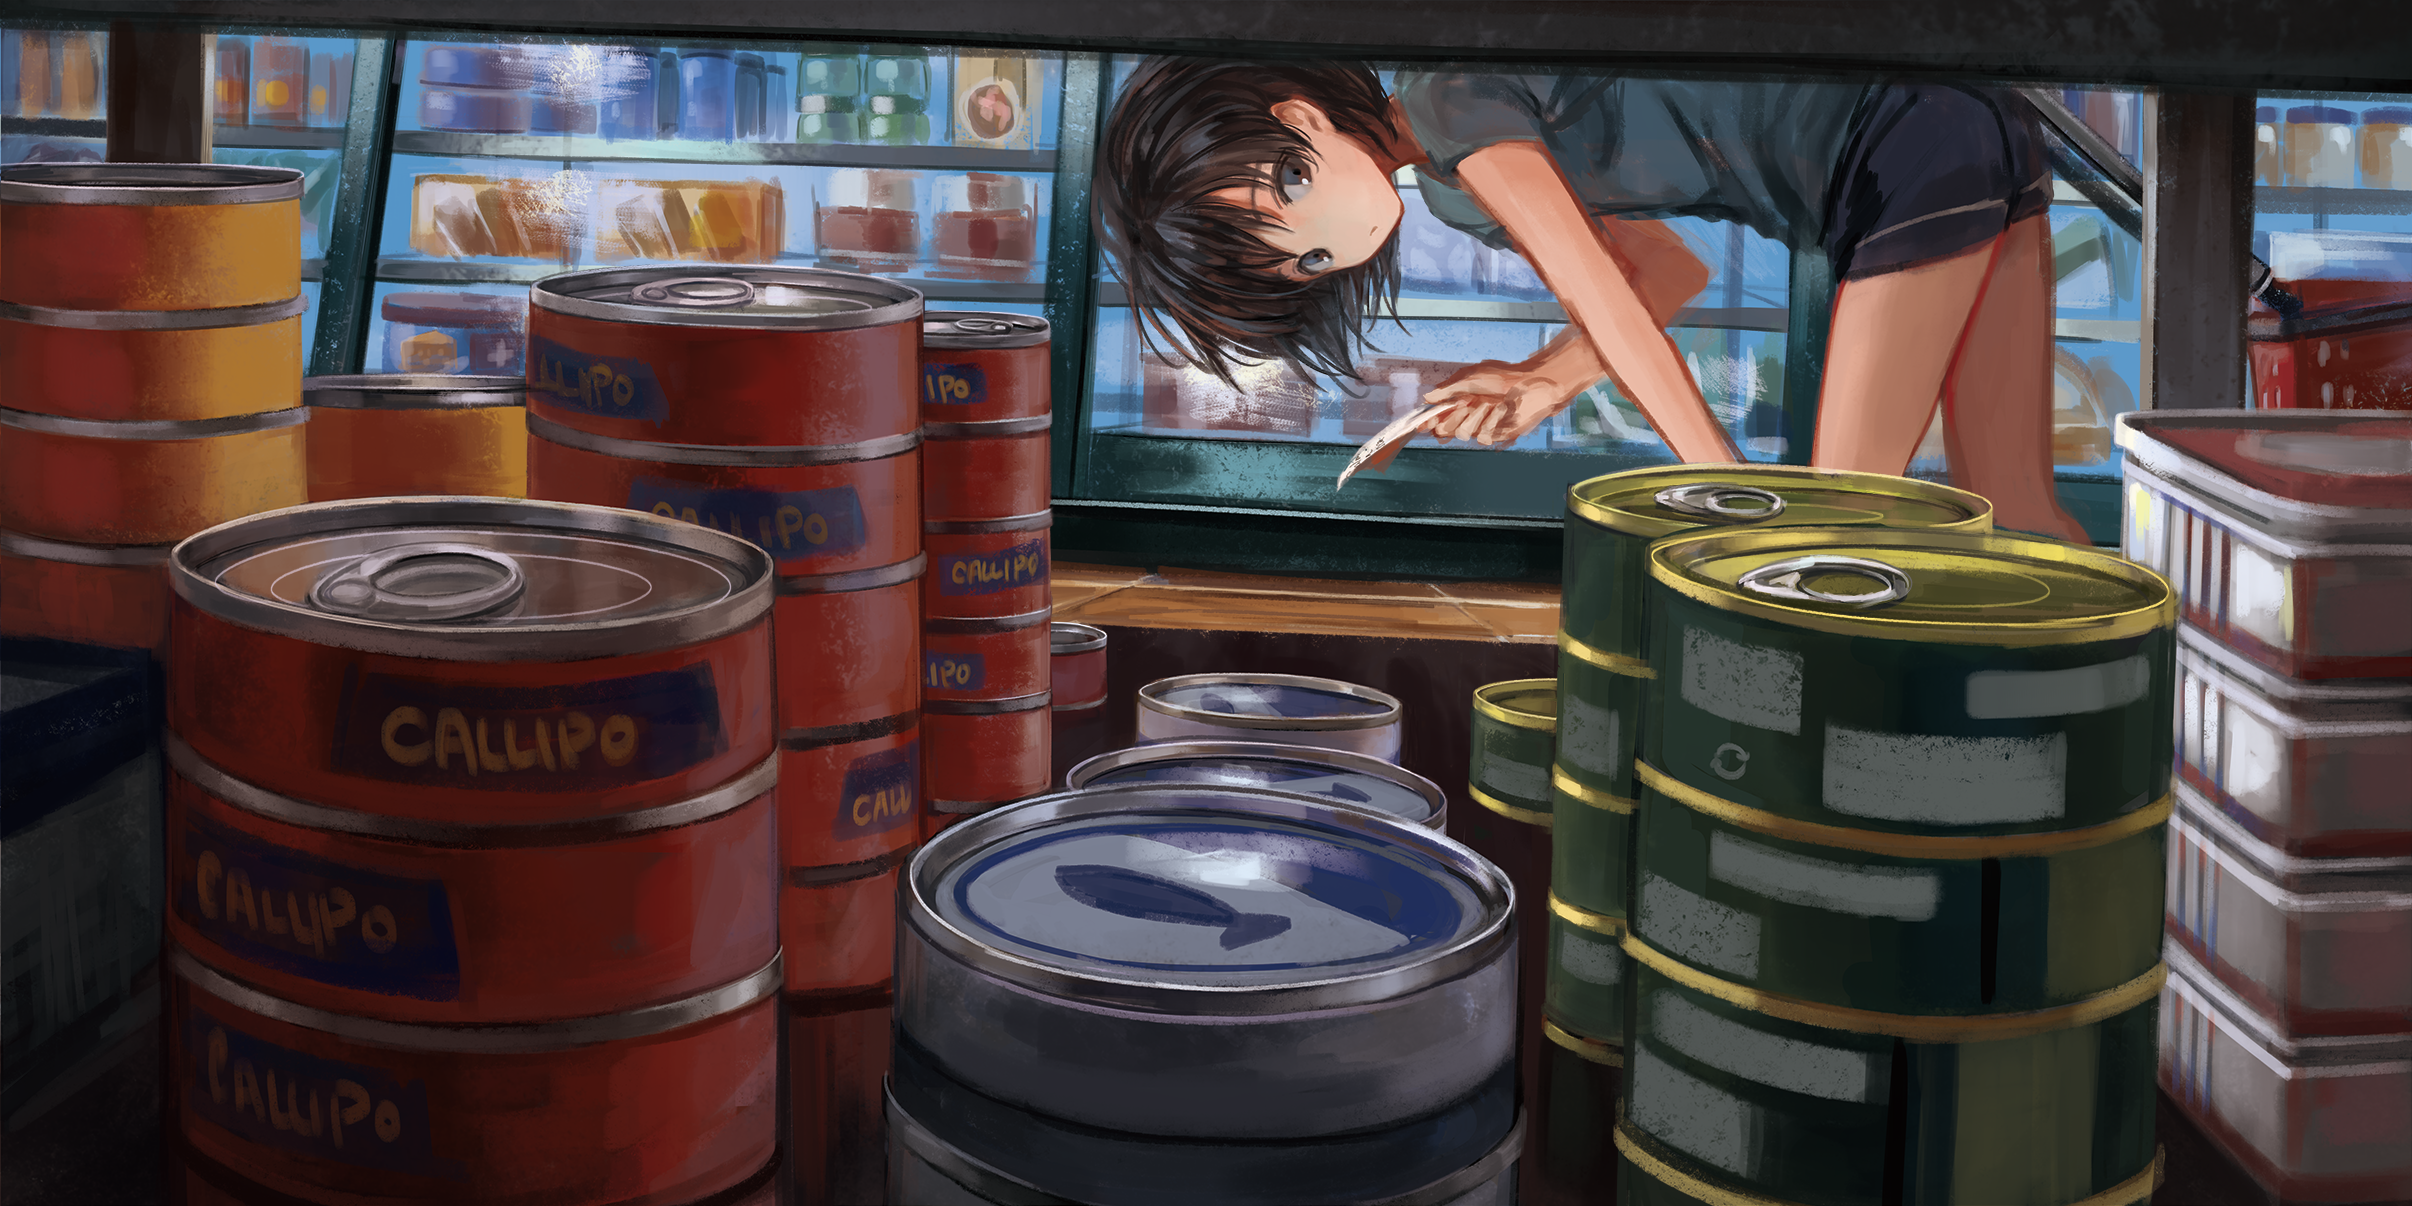 Anime 2D Digital Art Artwork Can Food Markets 2412x1206